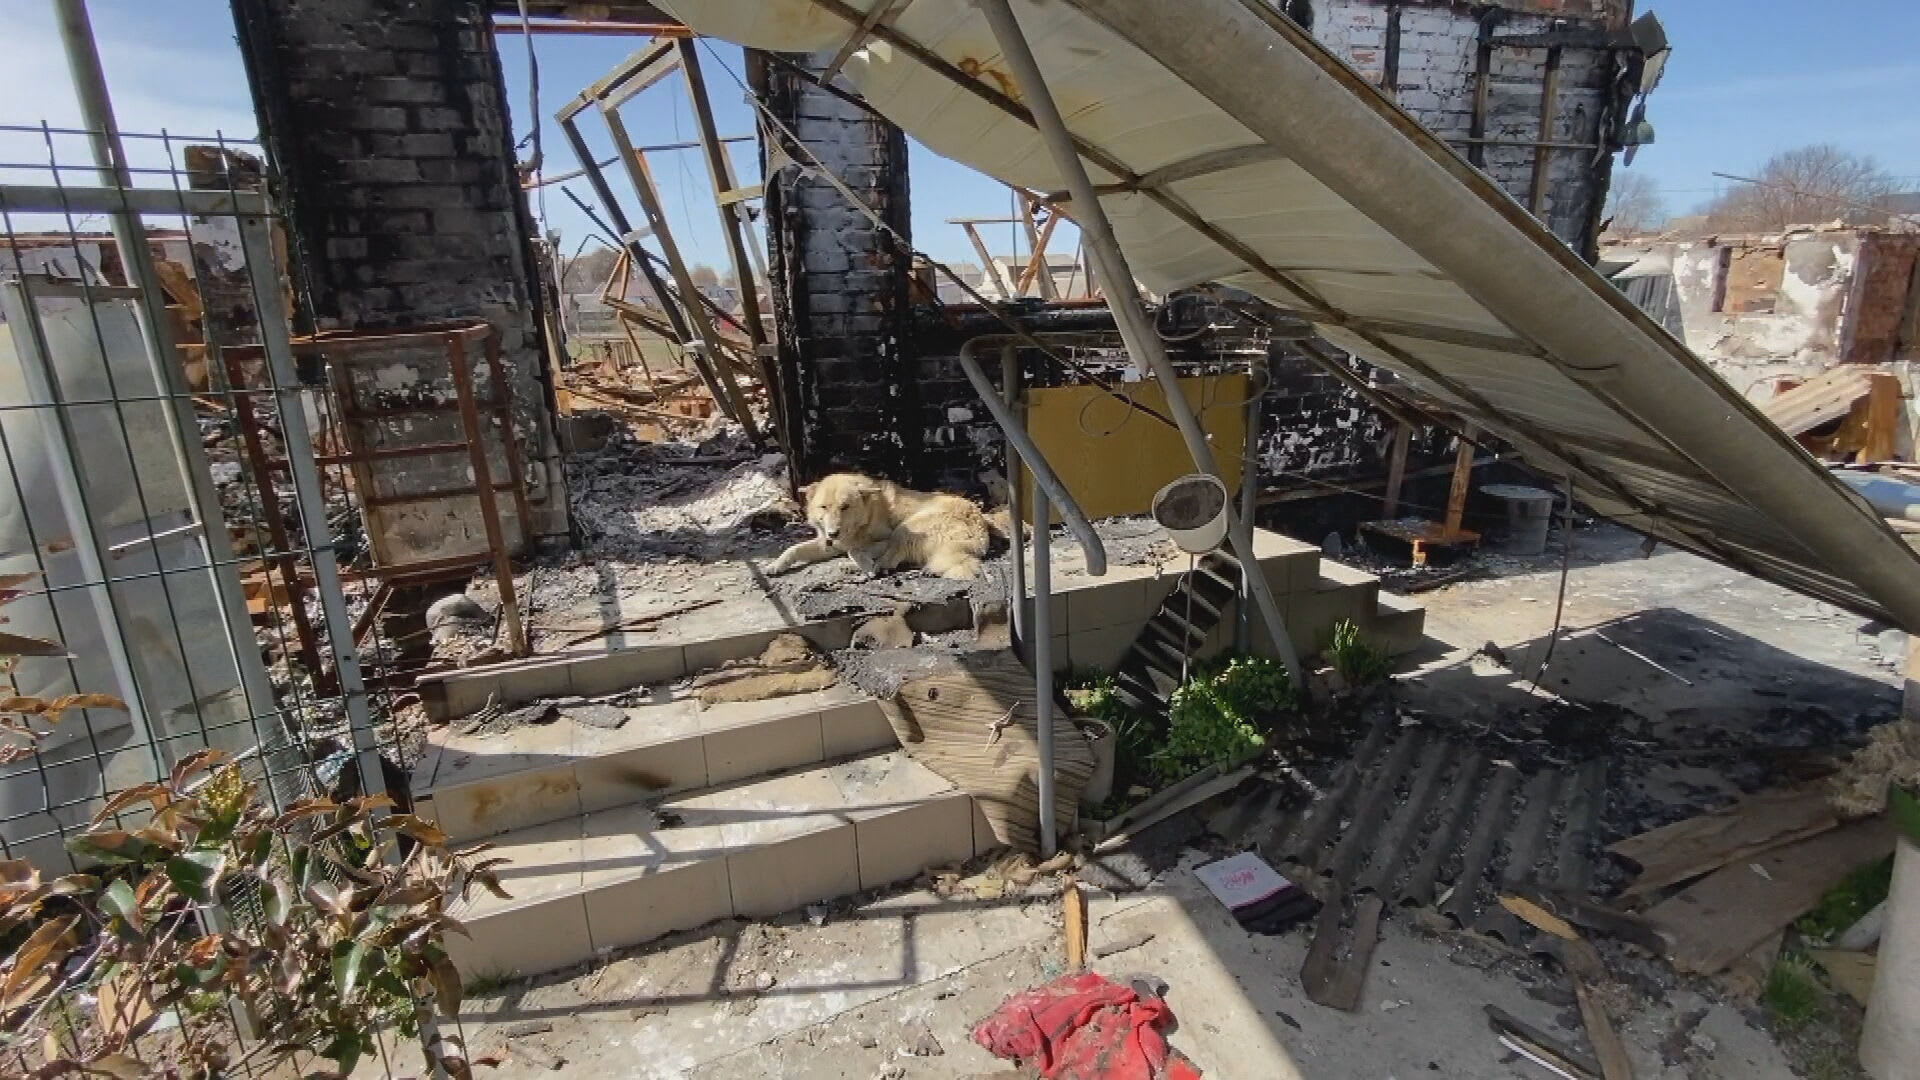 Pes jménem Tuman leží netečně na prahu vybombardovaného domu. Jeho majitelé odjeli.